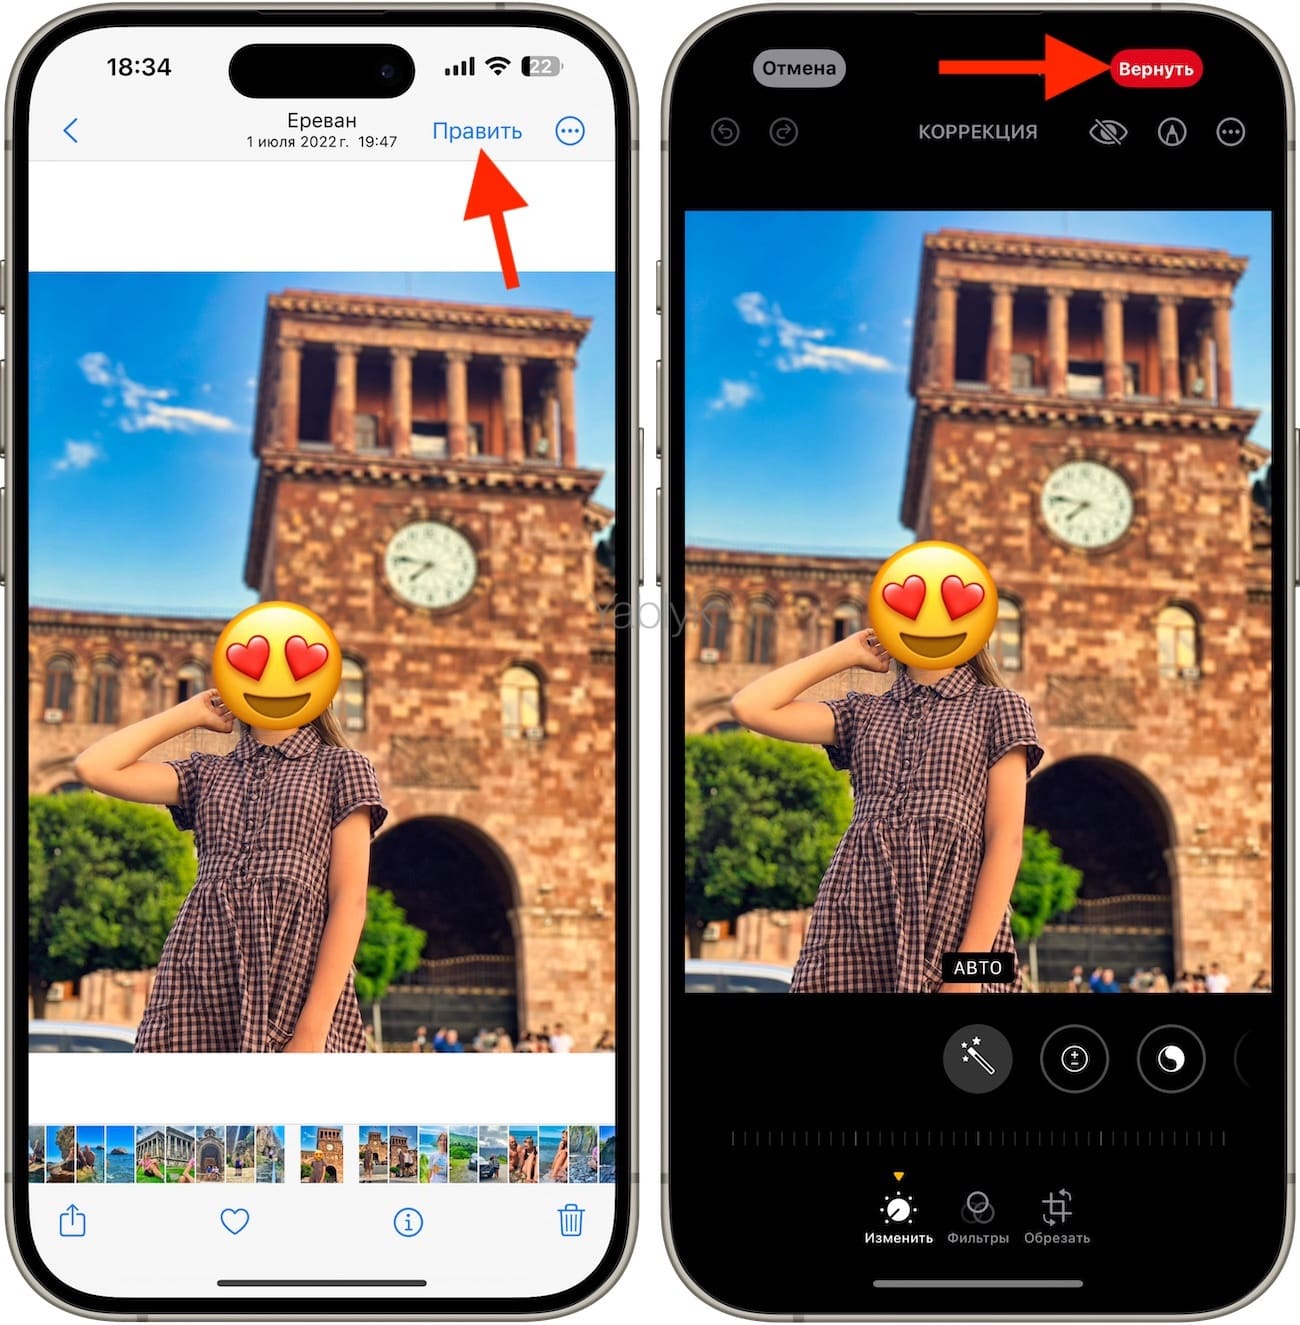 Как добавить смайлик на фото в приложении «Фото» на iPhone или iPad?